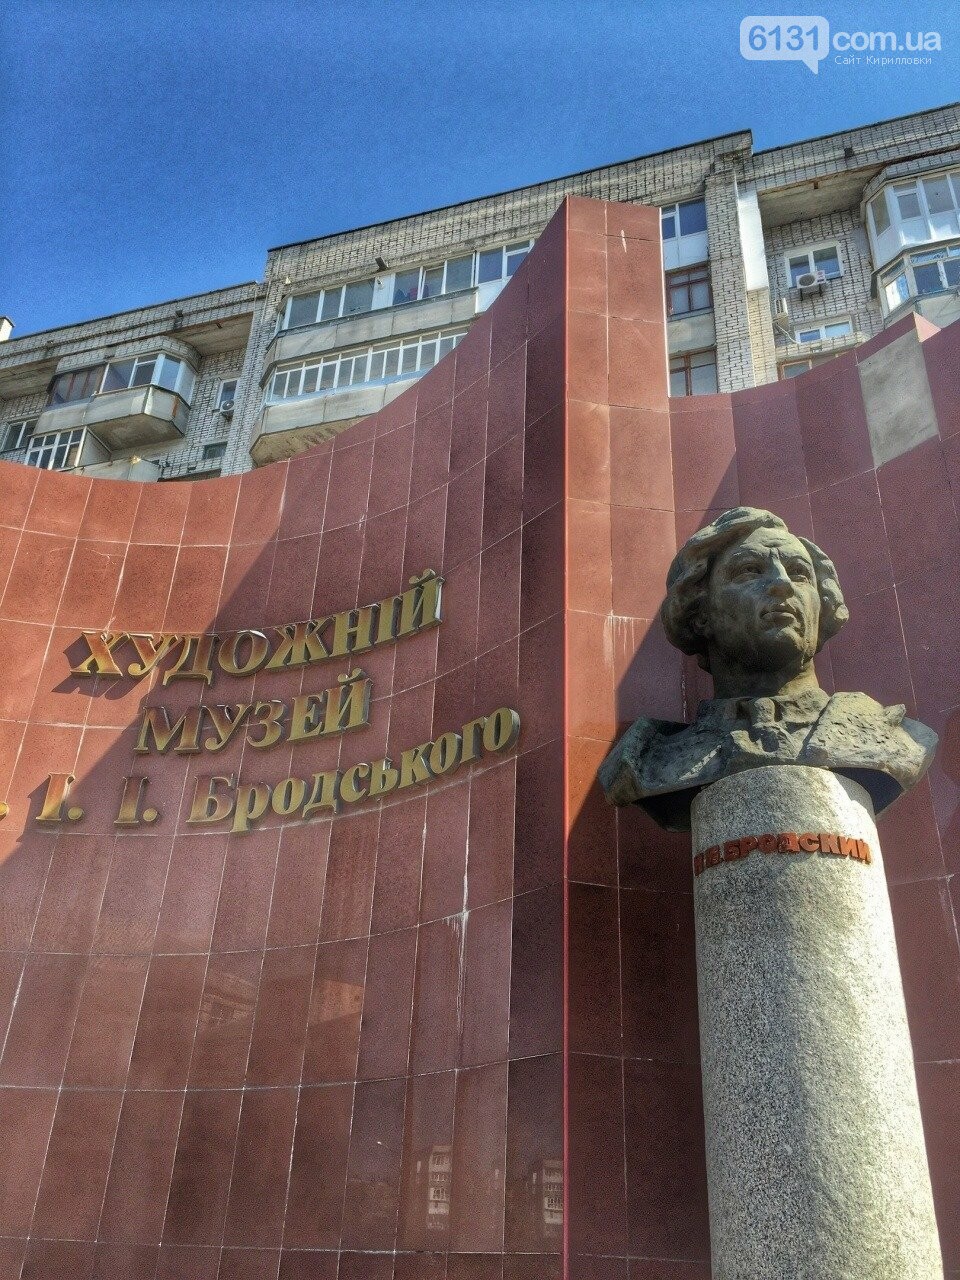 Фасад Художественного музея им. И.И.Бродского